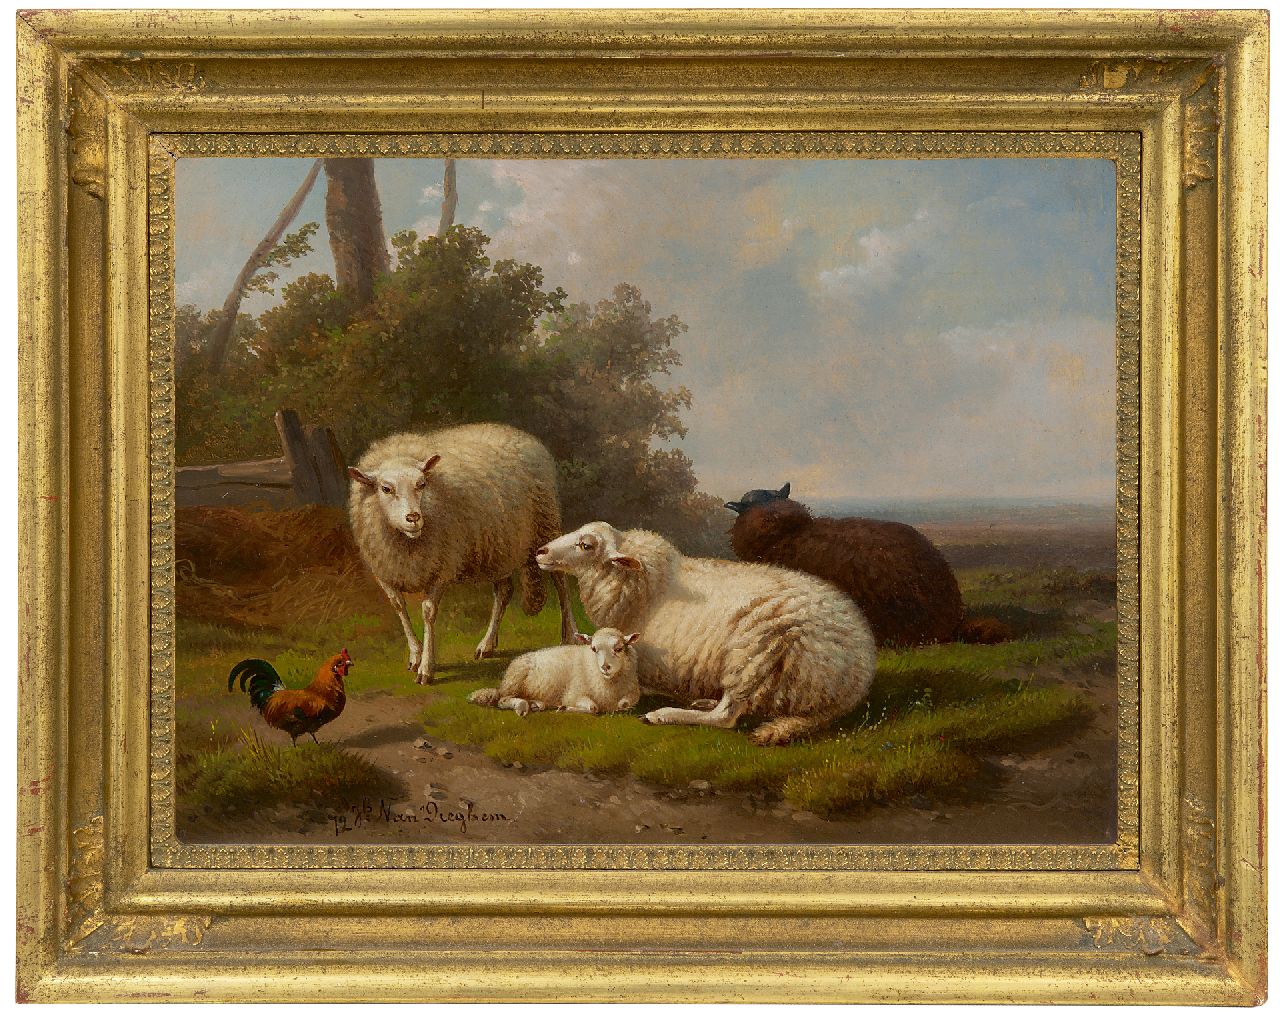 Dieghem J. van | Joseph van Dieghem | Schilderijen te koop aangeboden | Idyllisch landschap met schapen, olieverf op paneel 22,6 x 31,0 cm, gesigneerd linksonder en gedateerd '72